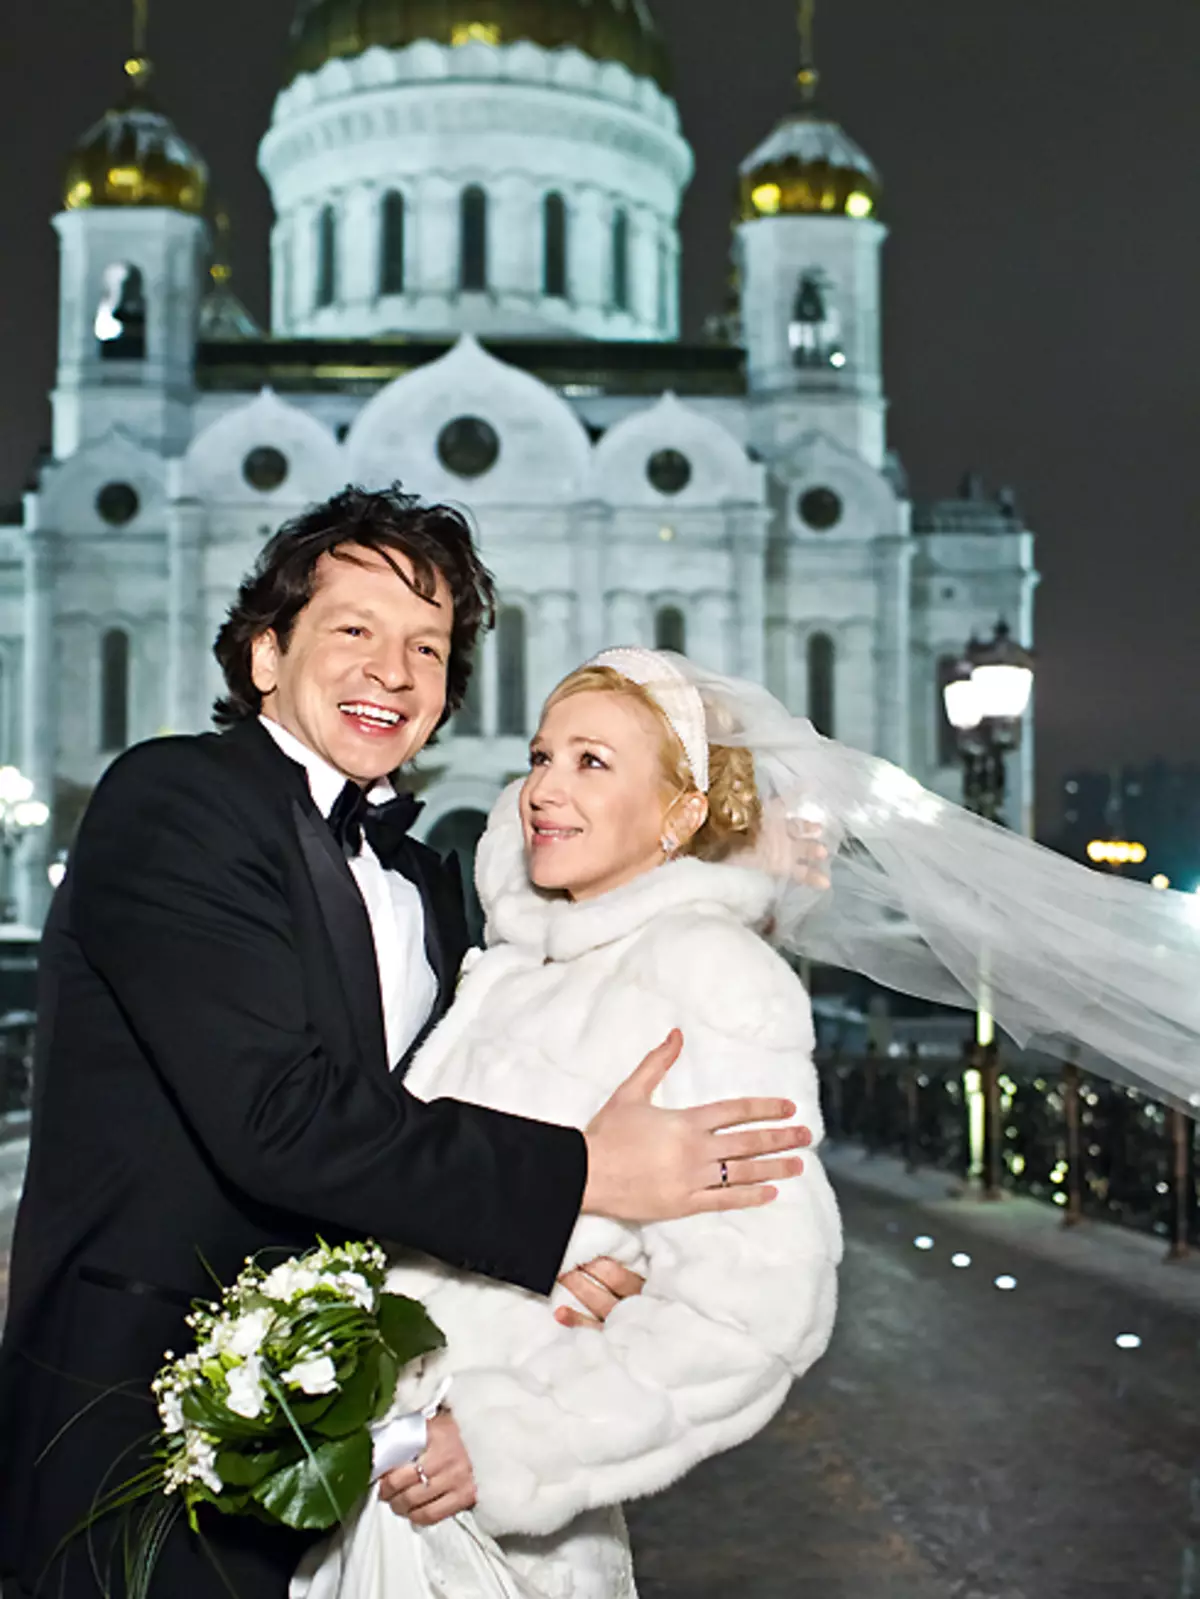 Irina und Maxim entschieden sich für den dritten Tag der Datierung zu heiraten